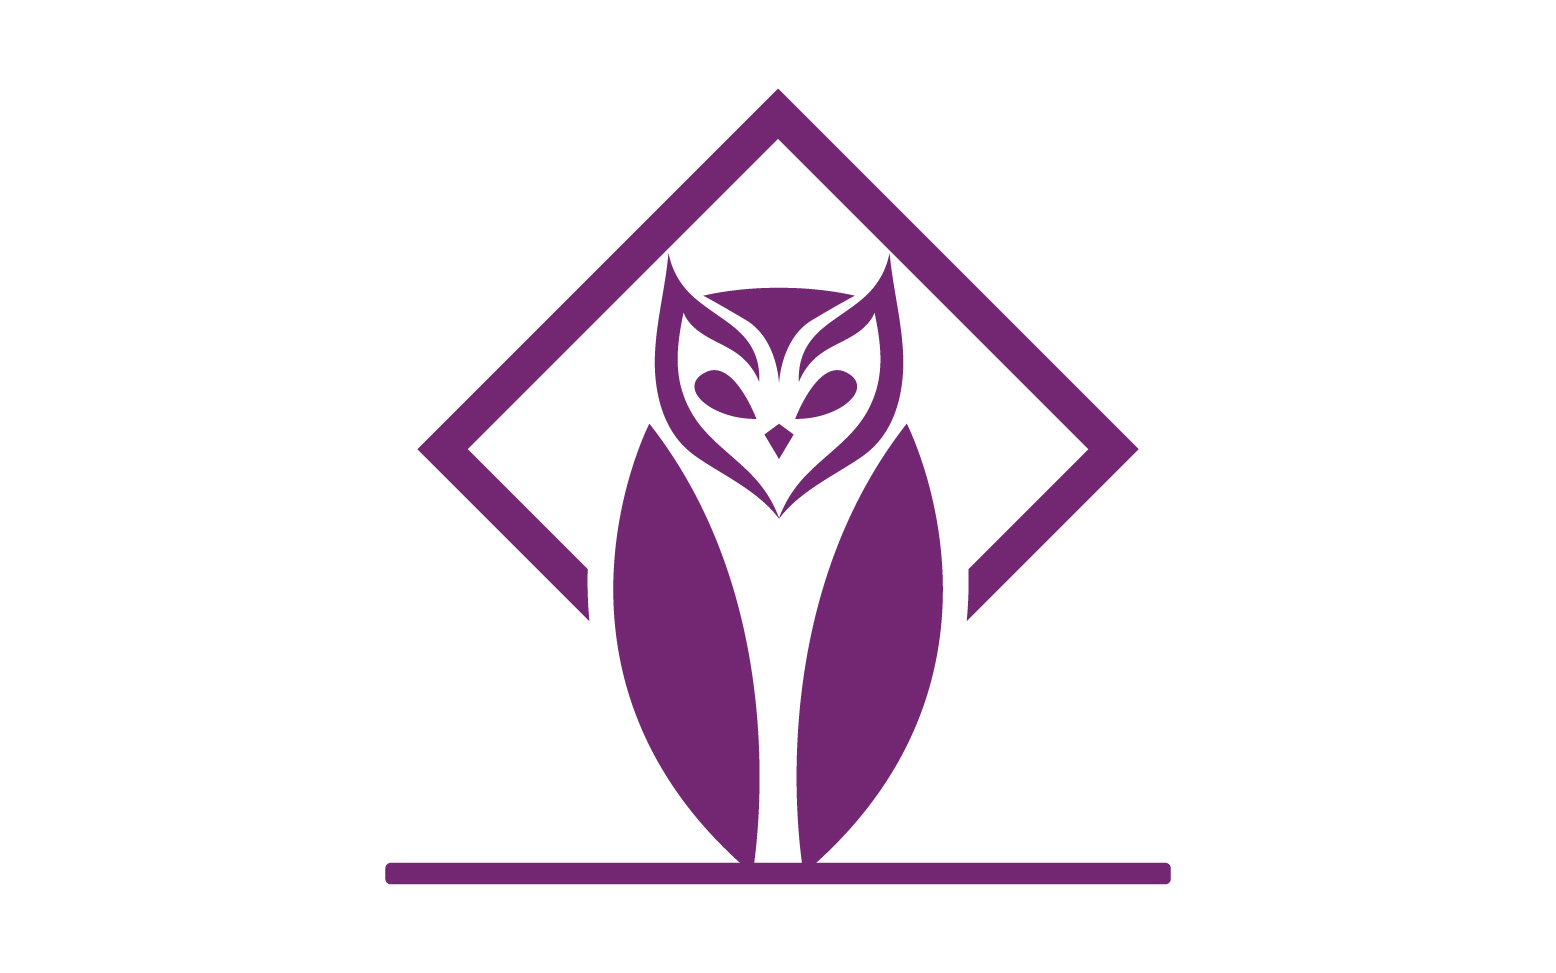 Owl head bird logo template vector v12